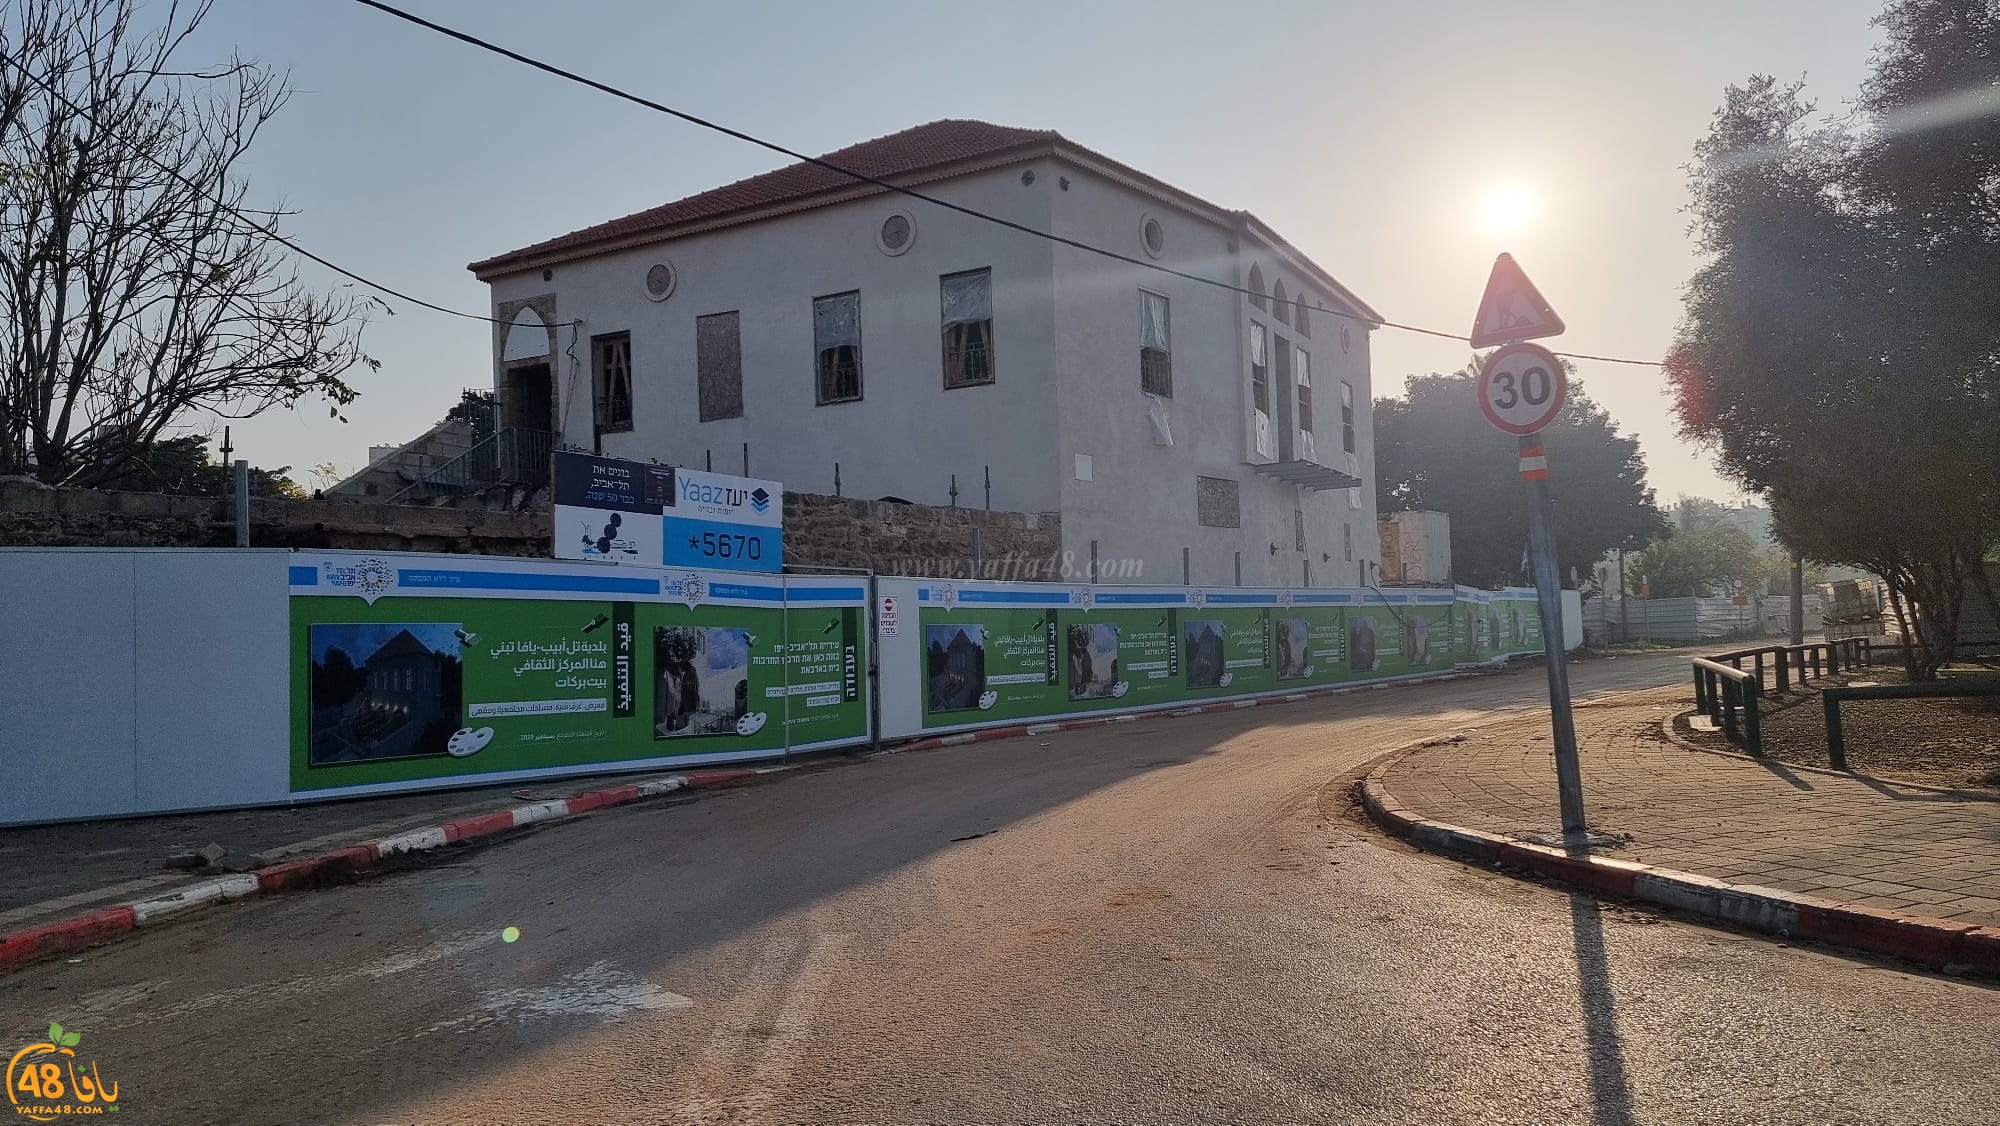  يافا: البلدية تباشر بتحويل بيت بركات إلى مركز ثقافي 